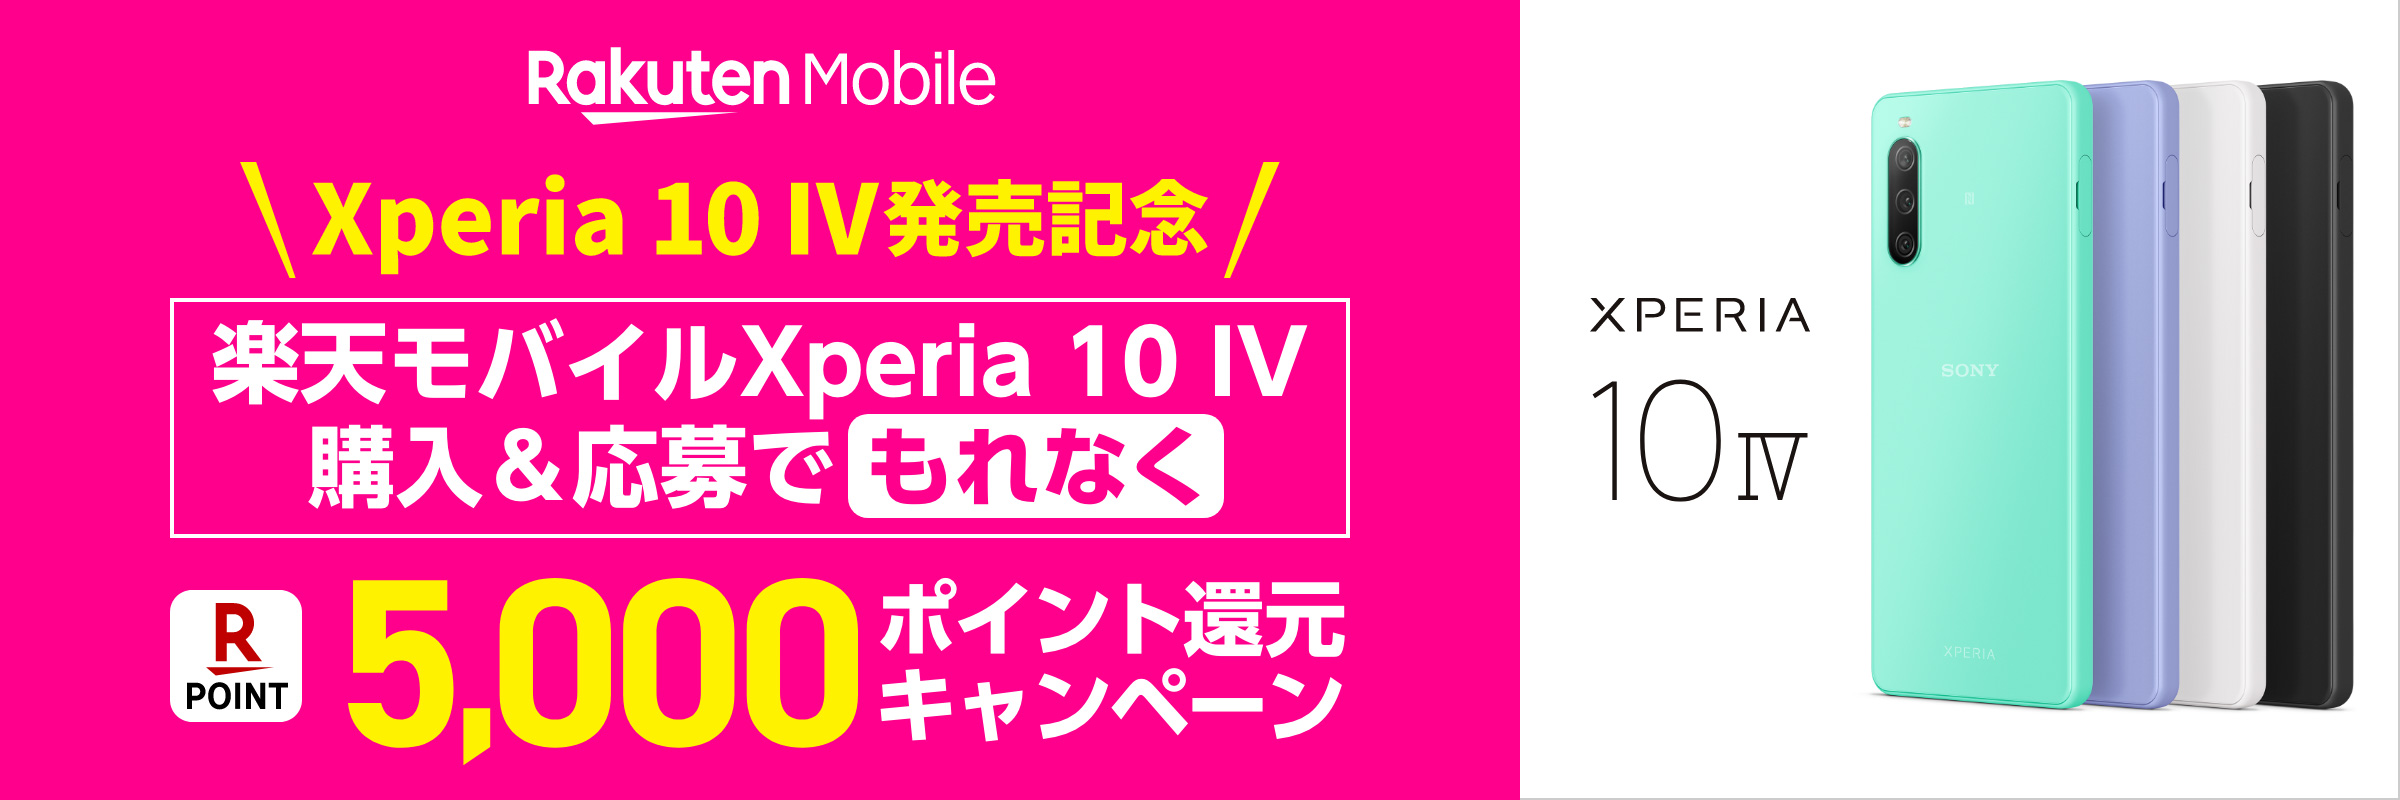 楽天モバイルXperia 10 IV購入＆応募でもれなくR POINT 5,000ポイント還元キャンペーン